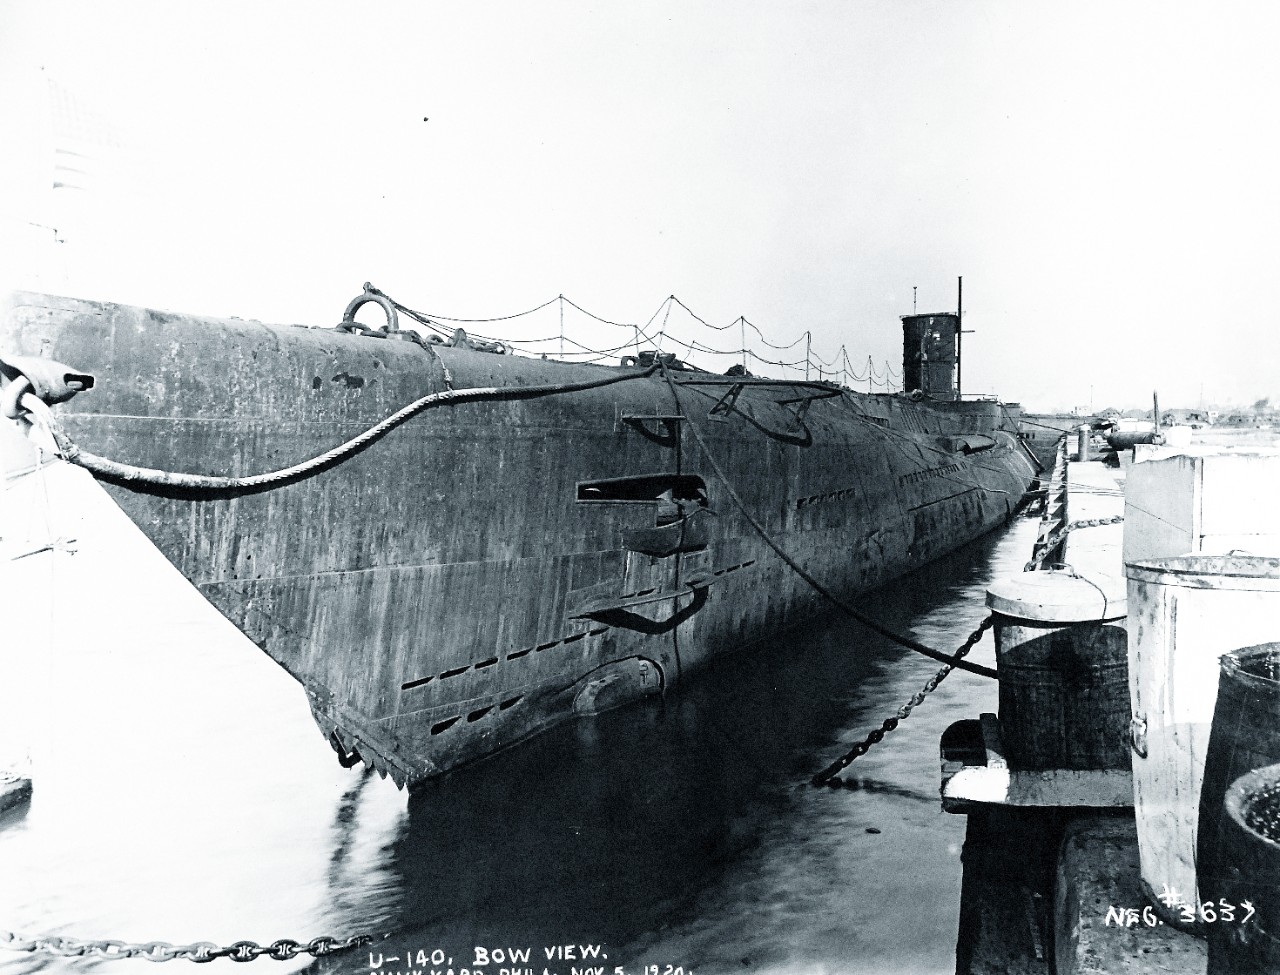 19 N 3637 German Submarine U 140